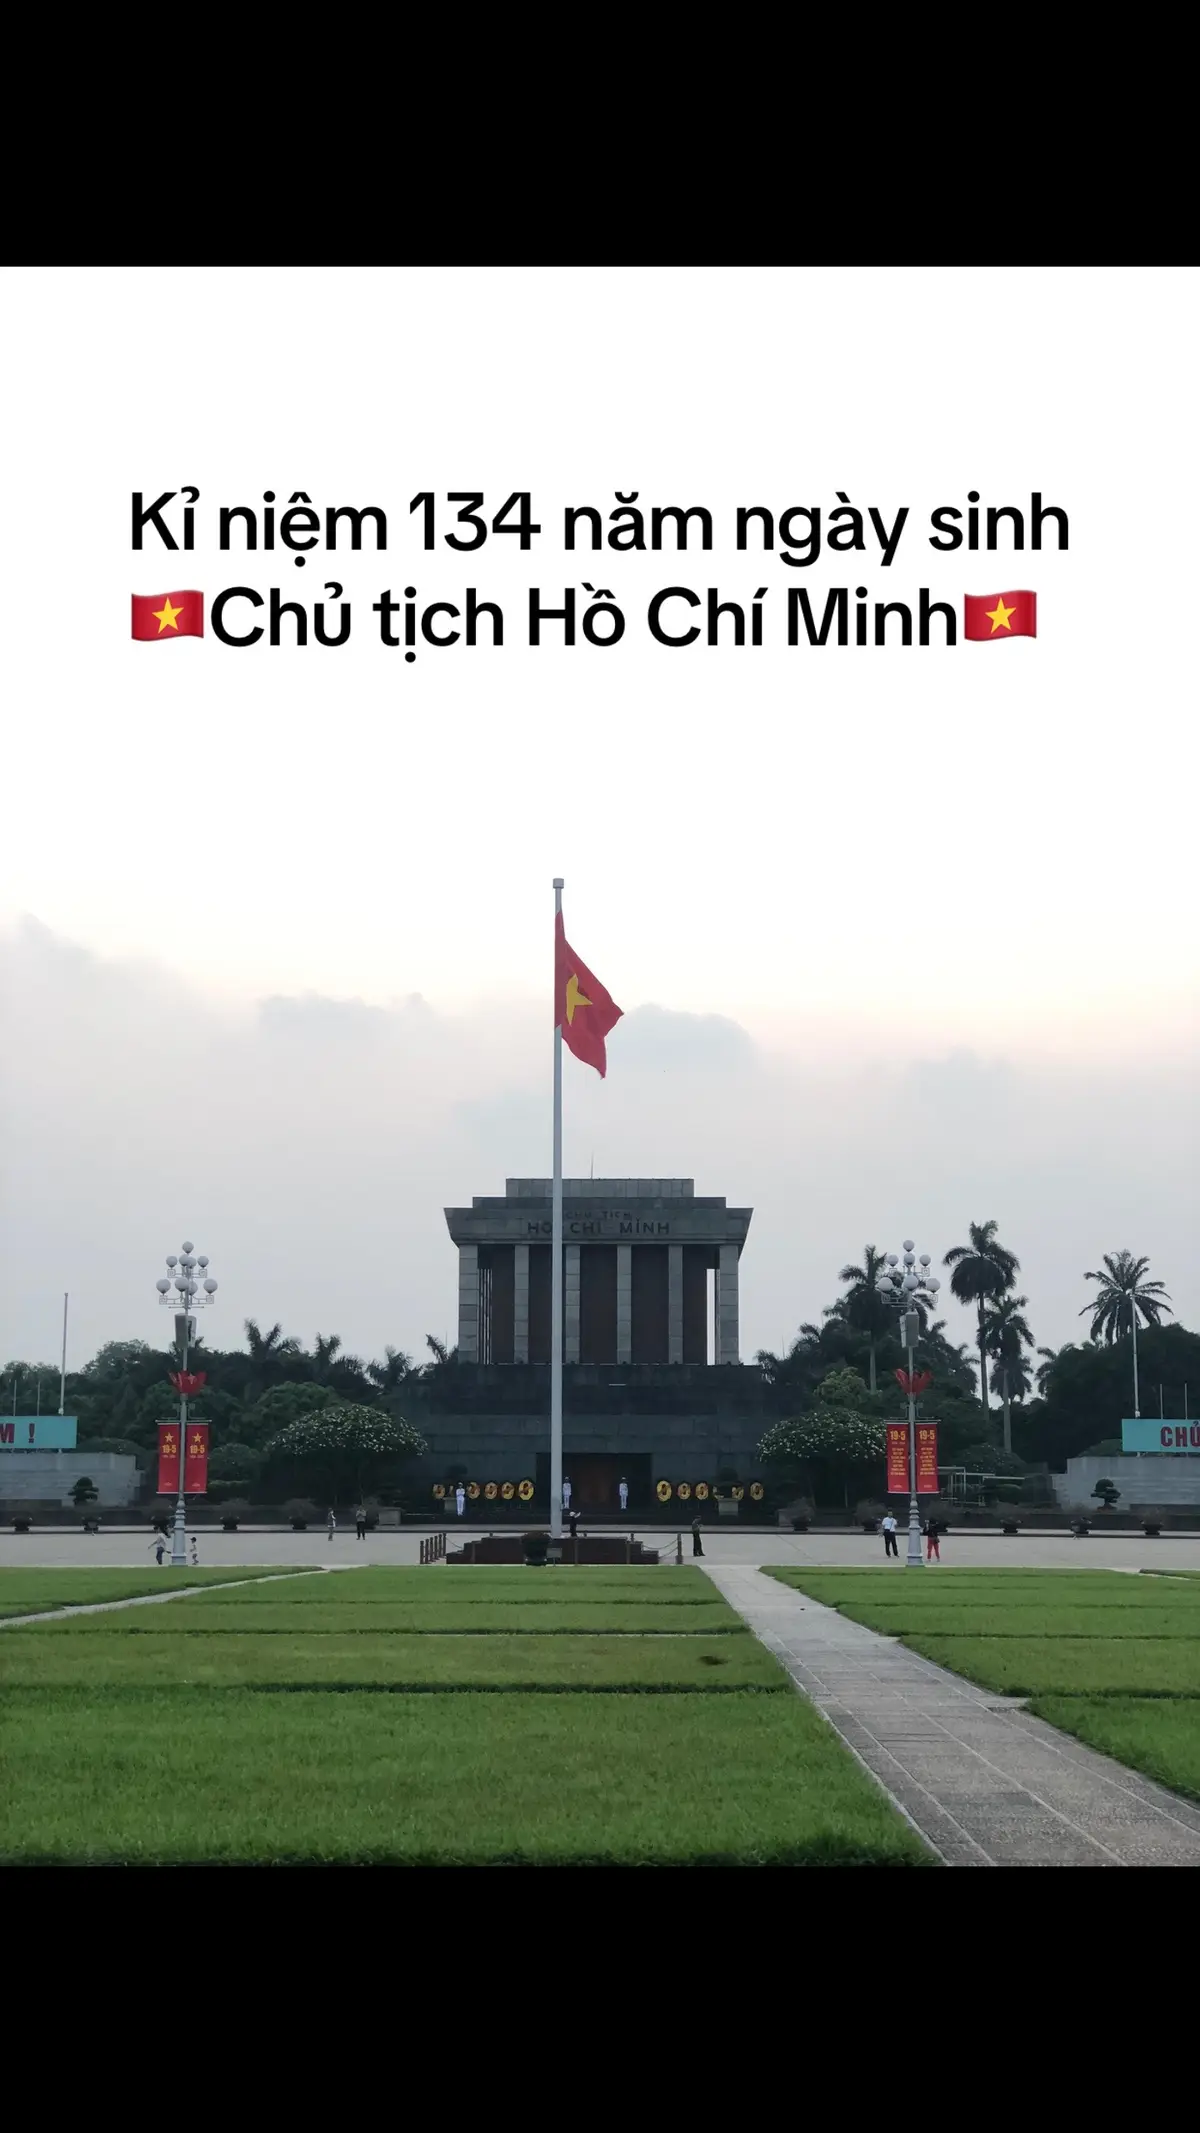 Kỉ niệm 134 năm ngày sinh của      🇻🇳Chủ tịch Hồ Chí Minh🇻🇳 #ngaysinhbacho #viengthamlangbac #xuhuongtiktok #fypシ゚viral #vietnamtoiyeu 